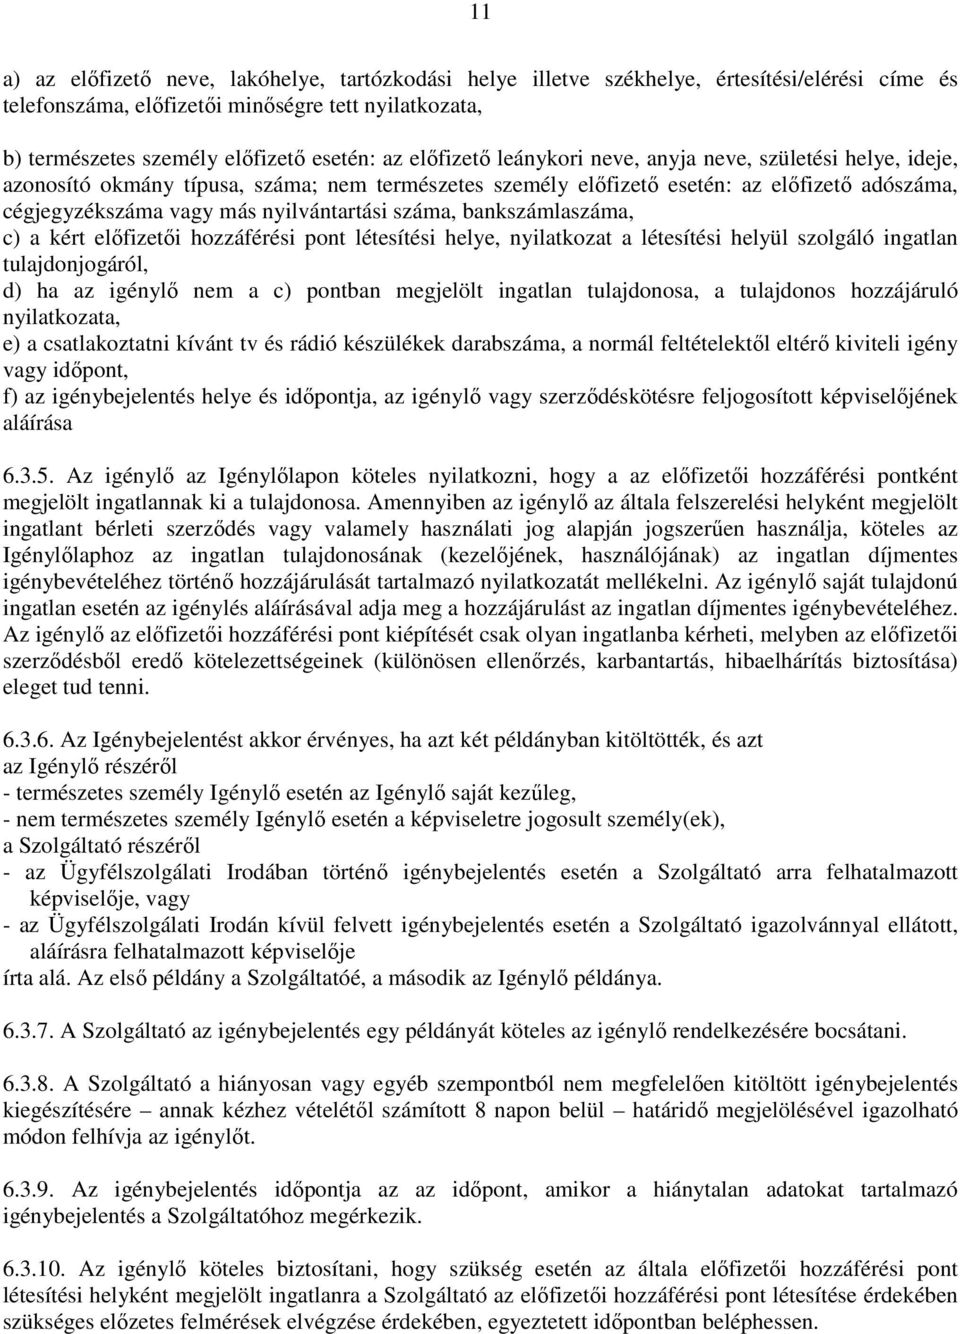 száma, bankszámlaszáma, c) a kért elıfizetıi hozzáférési pont létesítési helye, nyilatkozat a létesítési helyül szolgáló ingatlan tulajdonjogáról, d) ha az igénylı nem a c) pontban megjelölt ingatlan